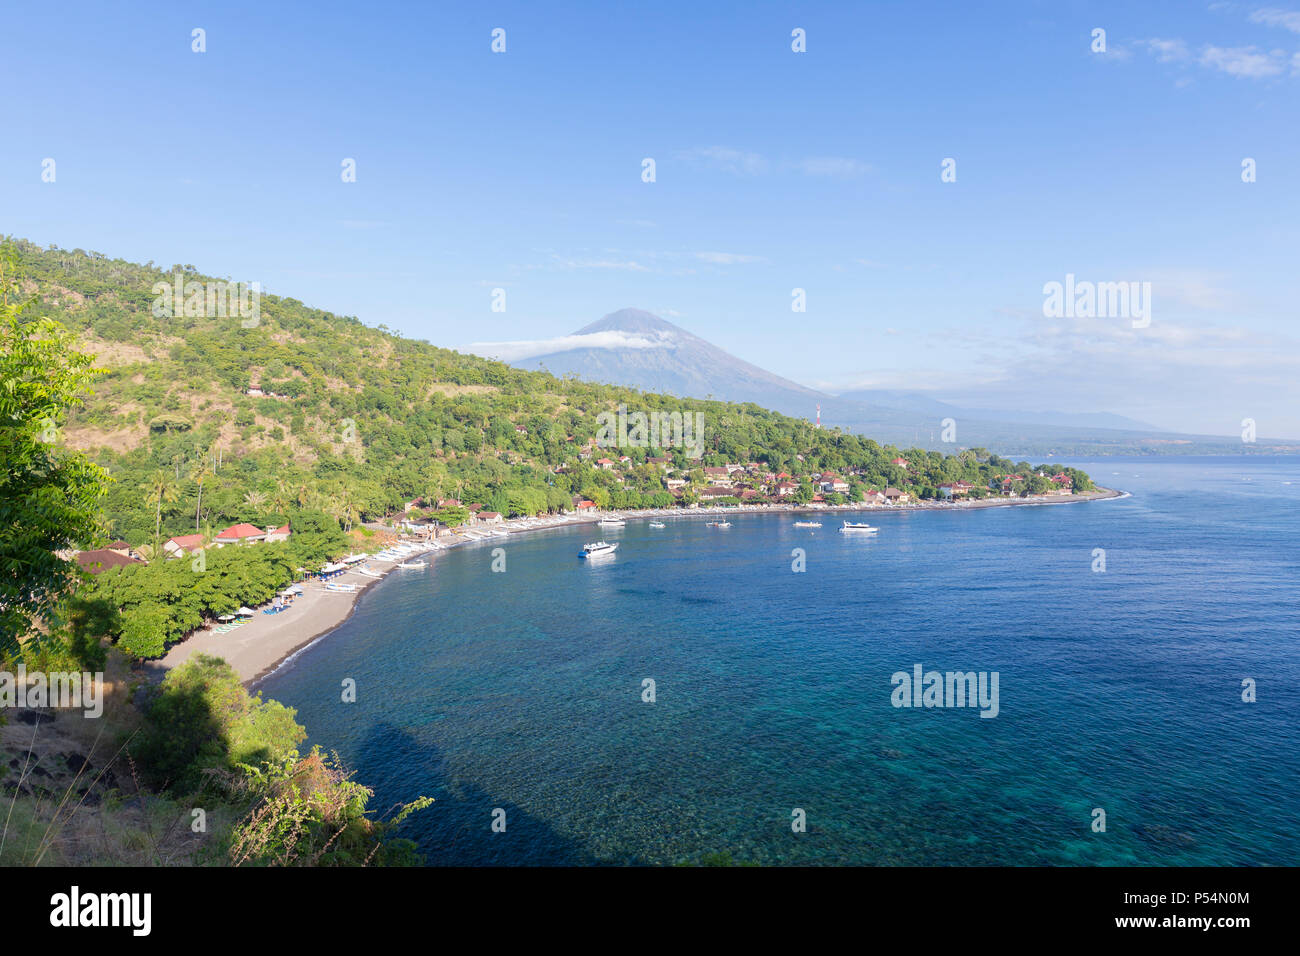 Spiaggia di Amed con il vulcano Agung in background, Bali, Indonesia Foto  stock - Alamy